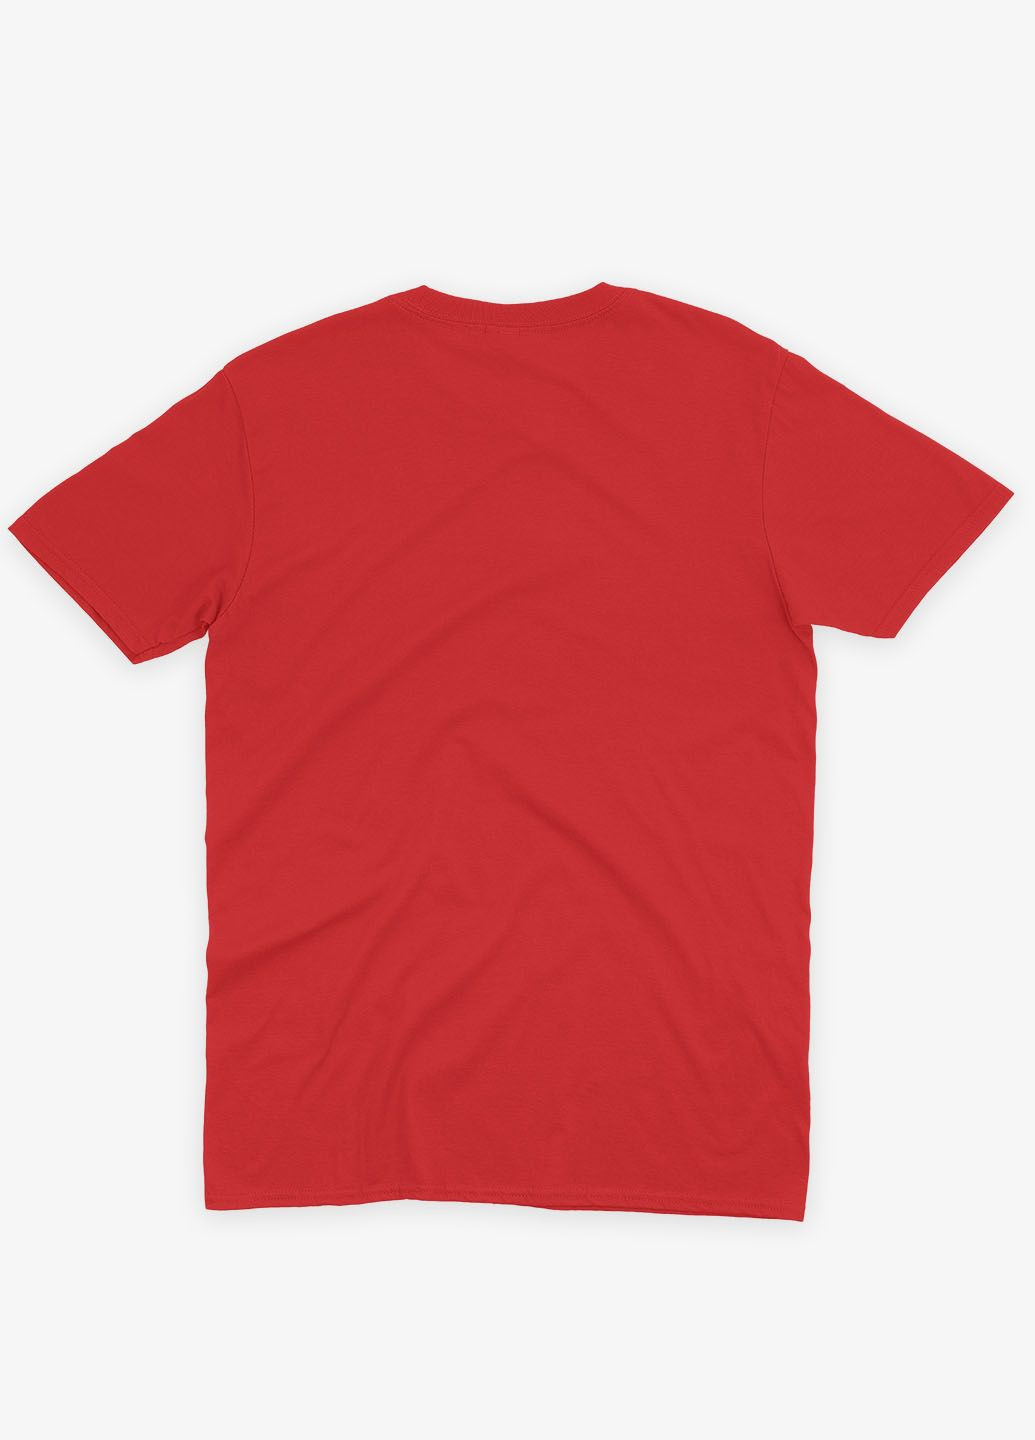 Красная демисезонная футболка для девочки с принтом супергероя - бэтмен (ts001-1-sre-006-003-001-g) Modno